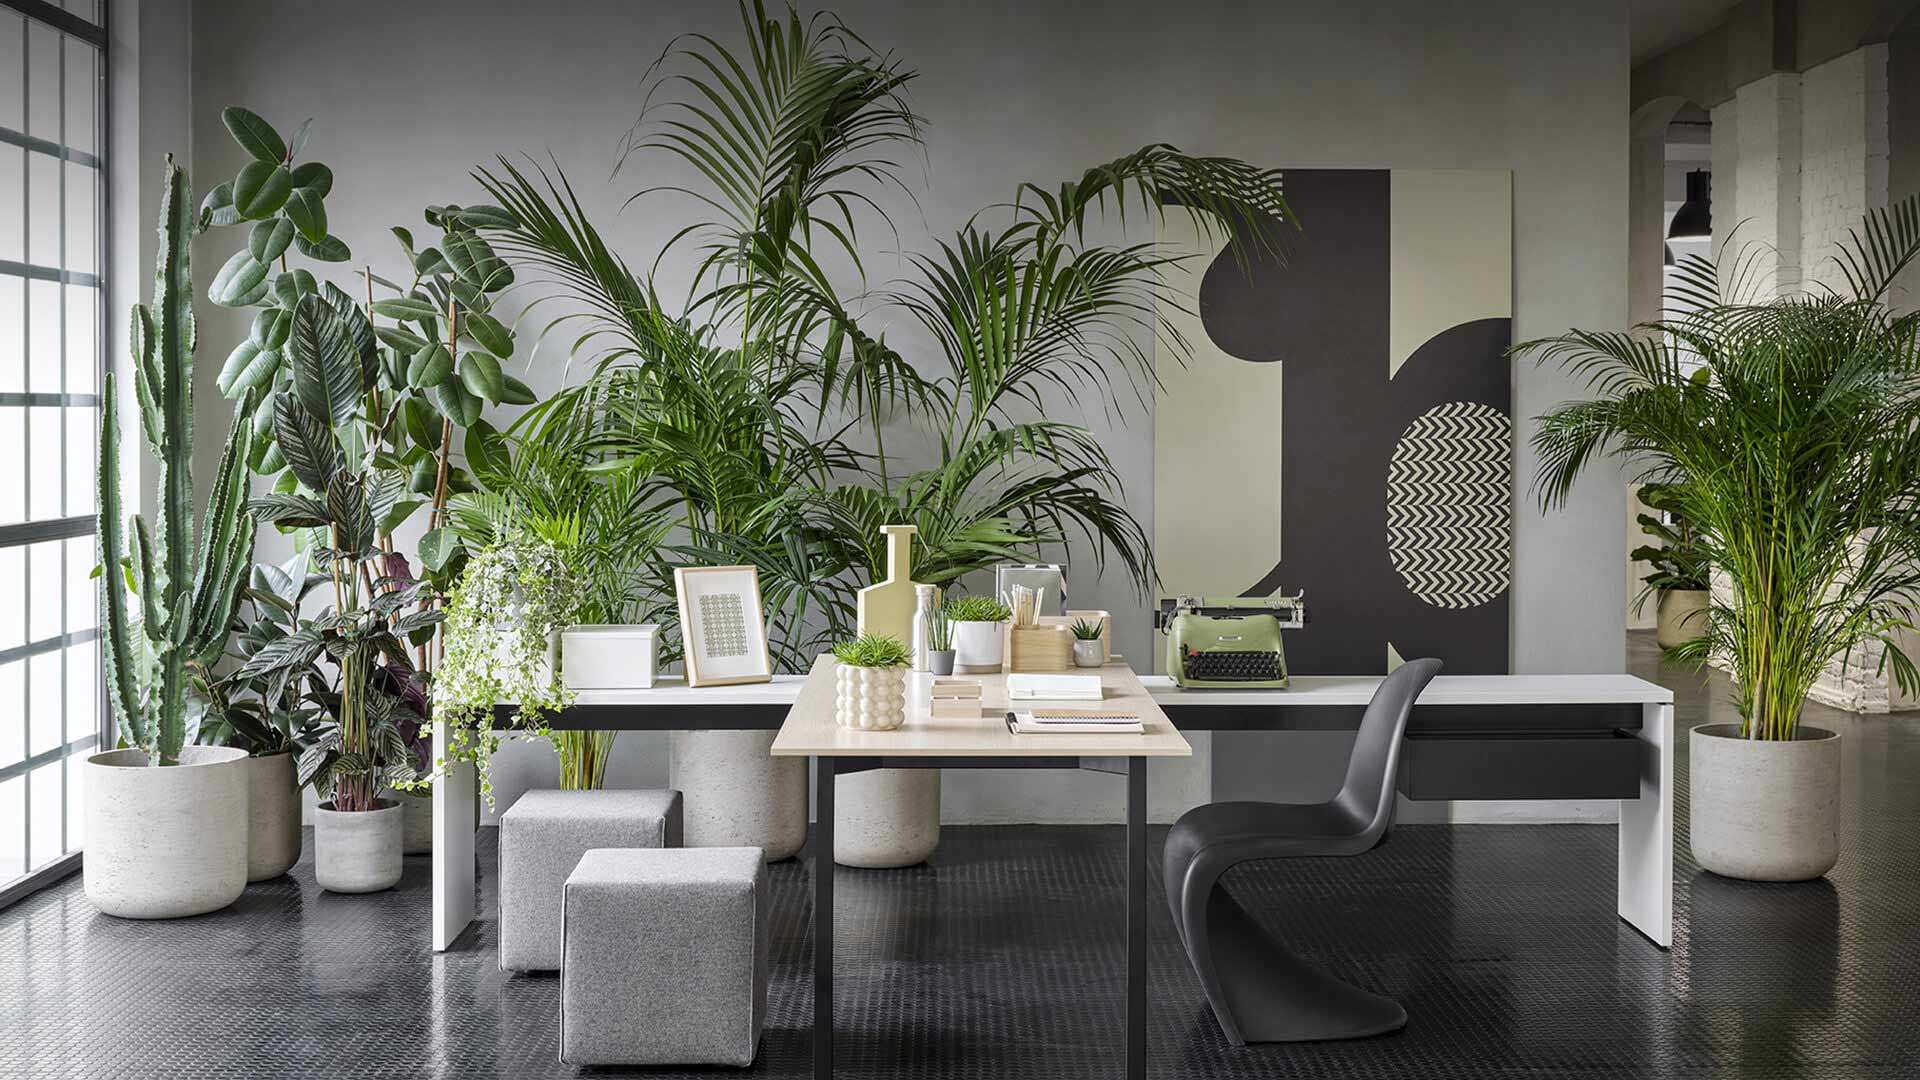 Citterio - Arredo Staff Agency - Italian Design Furniture - Molteni & C, Dada, Citteria, Unifor